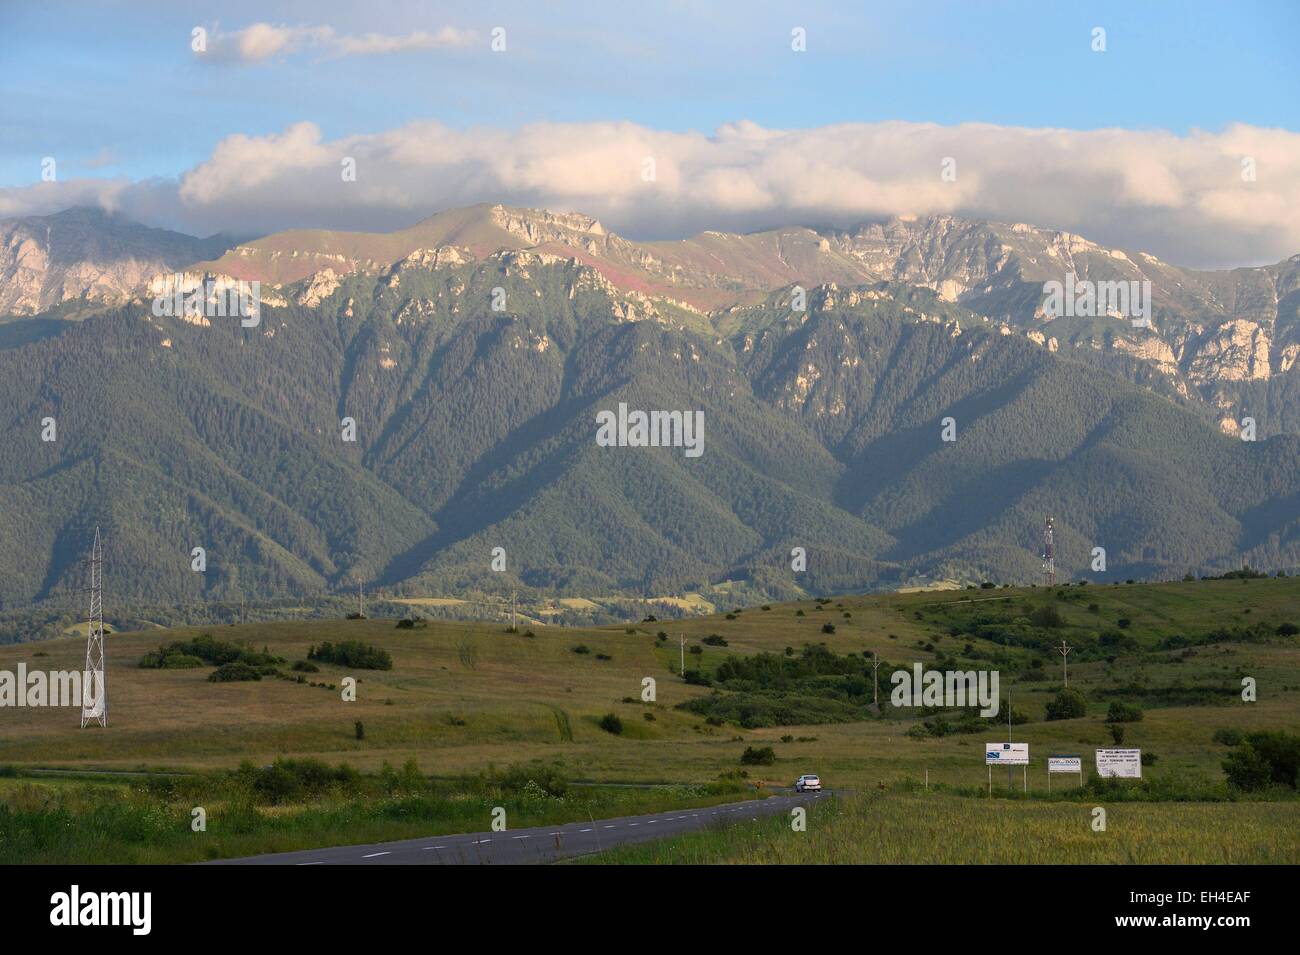 Romania, Transylvania, Brasov region, the Fagaras Mountains in the Southern Carpathians Stock Photo